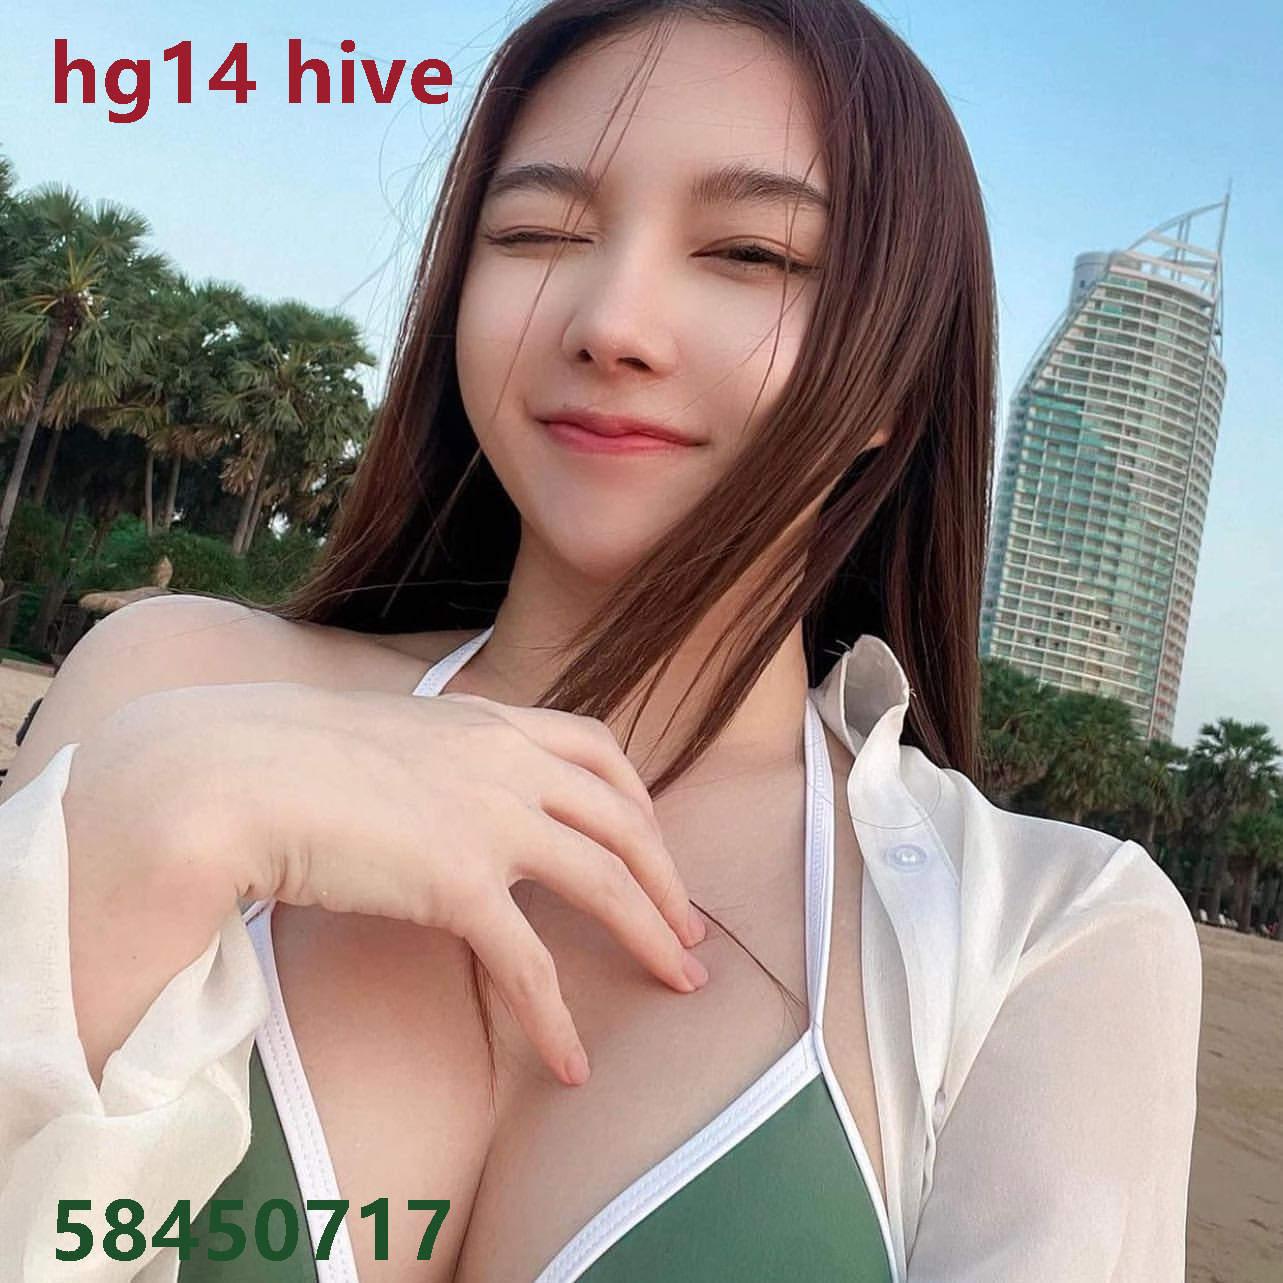 hg14 hive